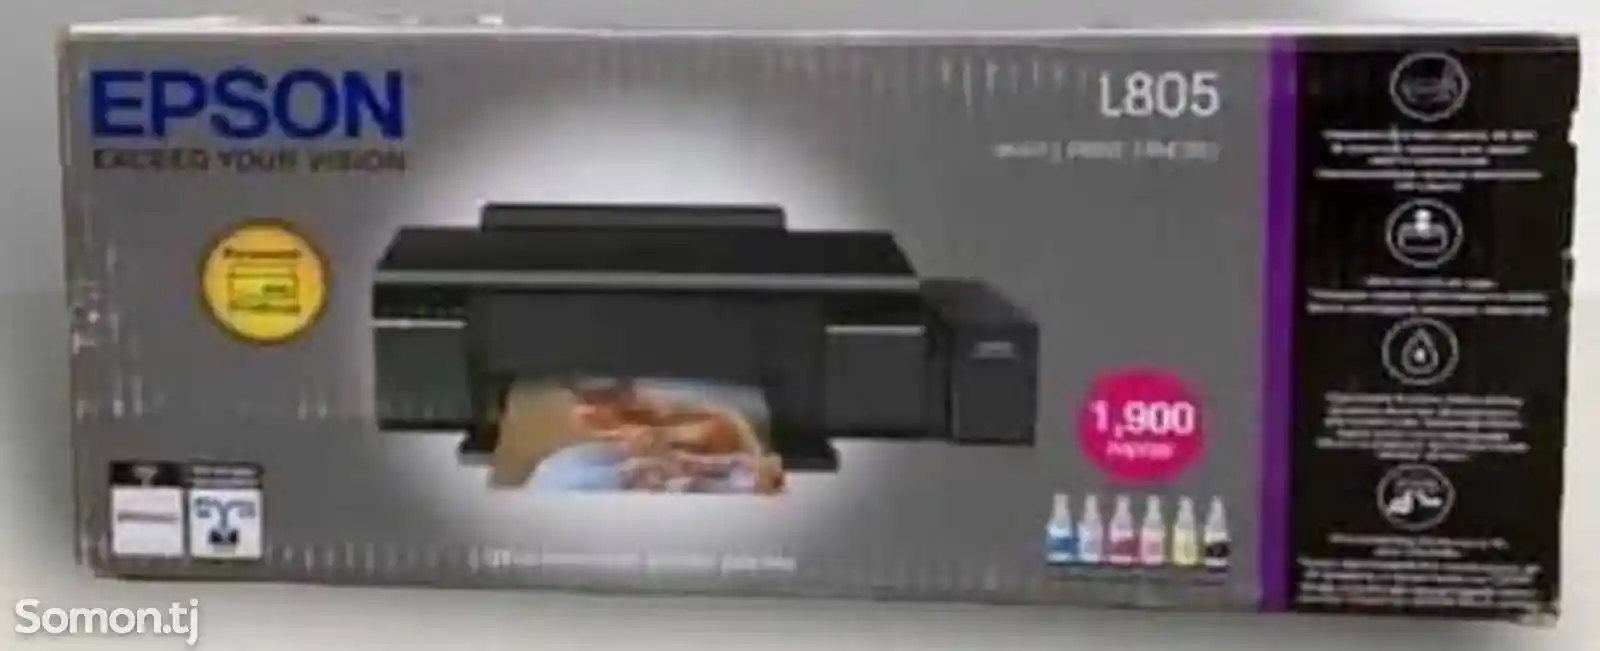 Принтер Epson L805-4